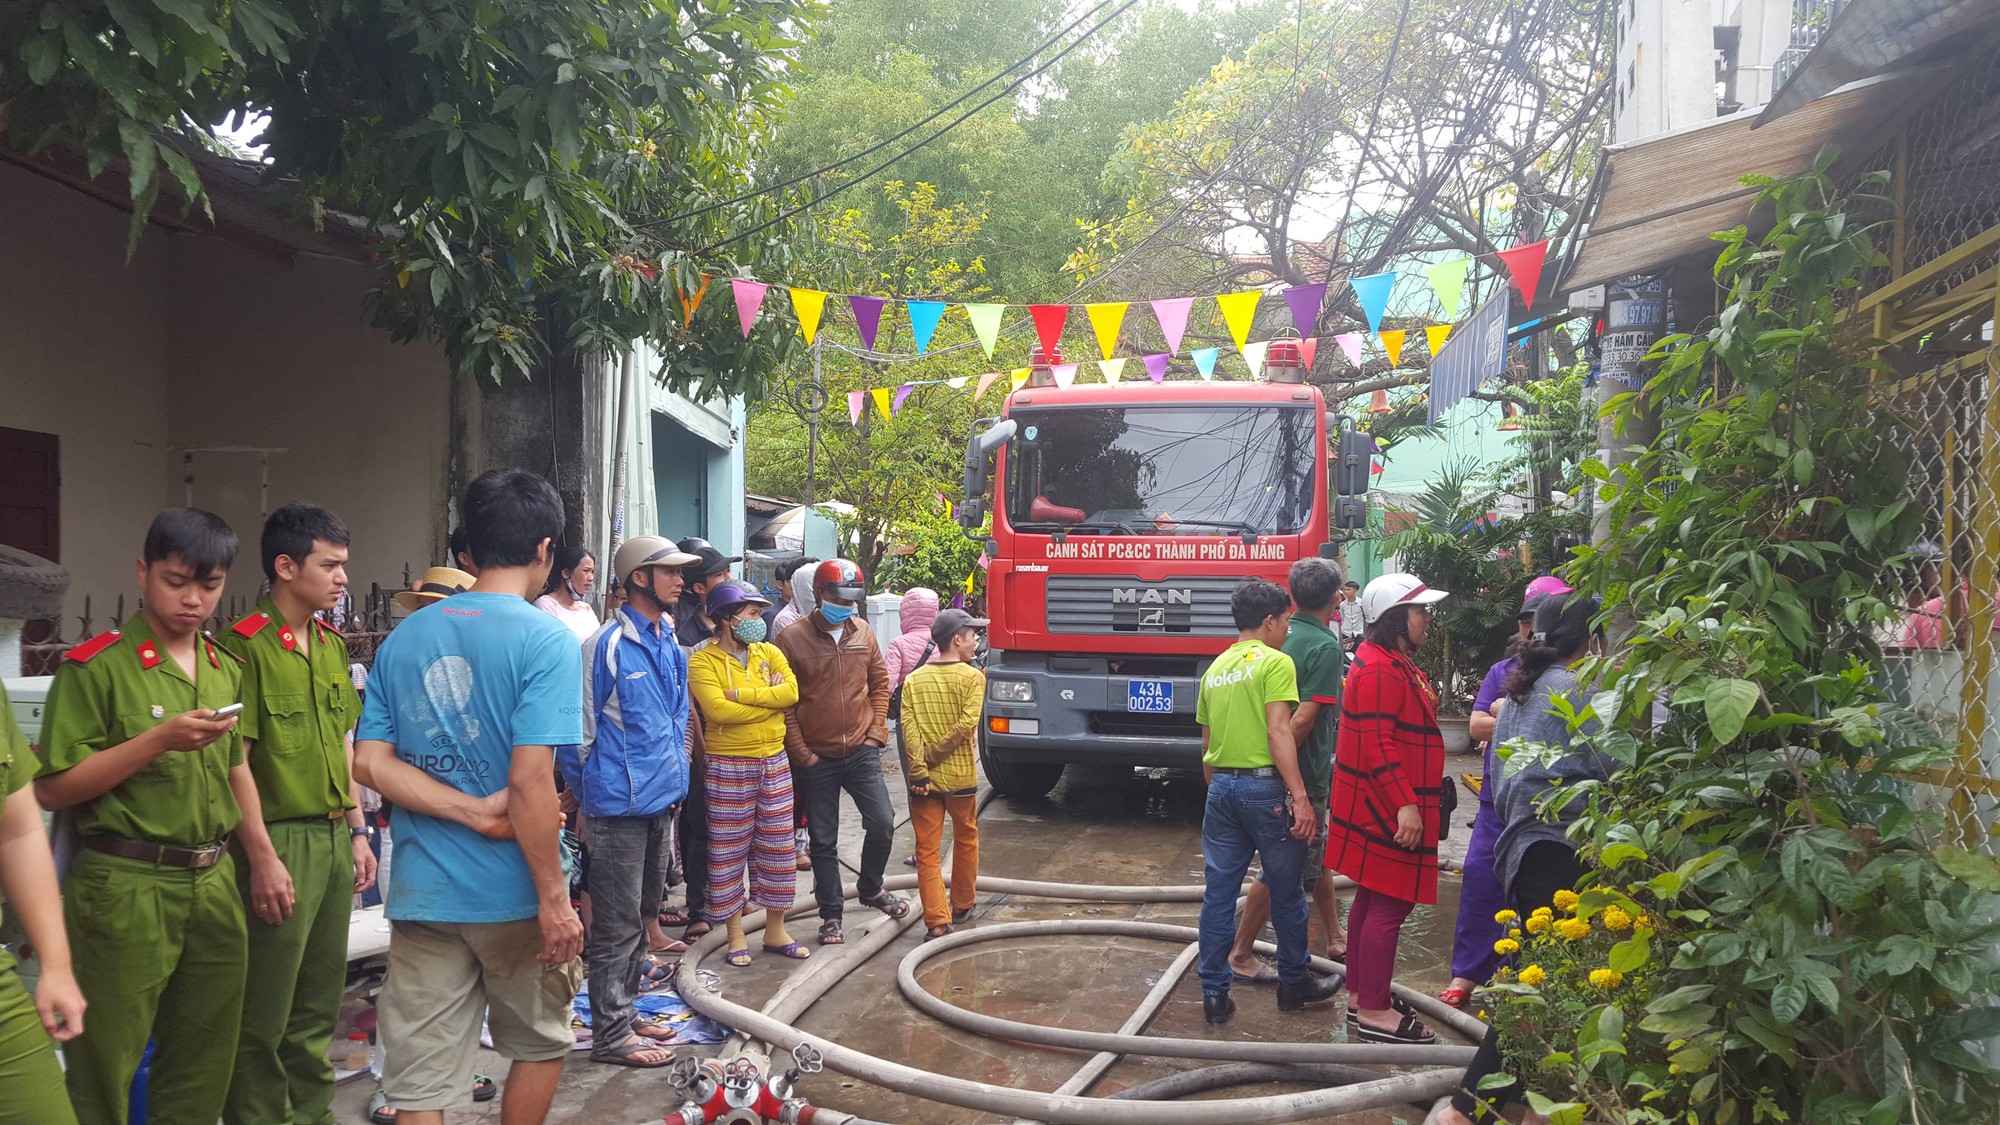 Đà Nẵng: Cháy lan tại nhà trọ giữa trưa, cả xóm náo loạn 2